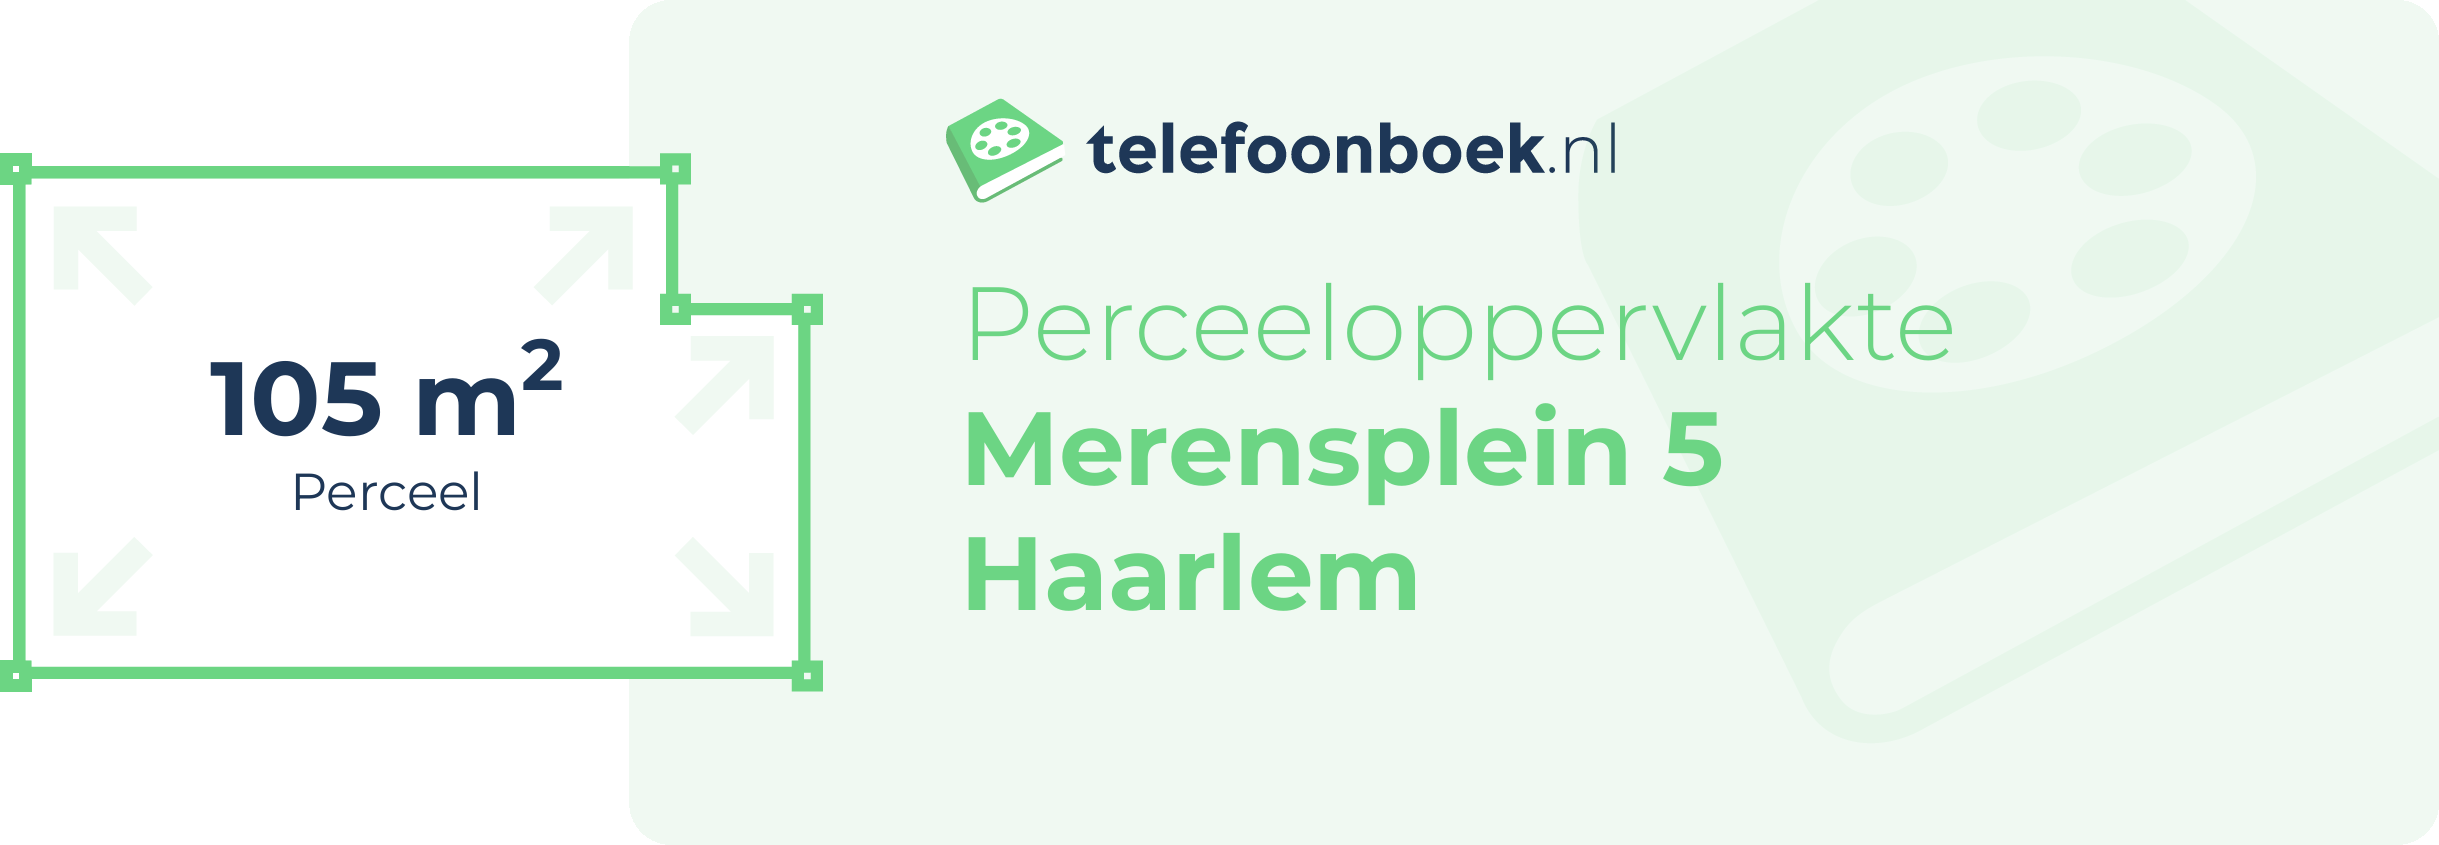 Perceeloppervlakte Merensplein 5 Haarlem